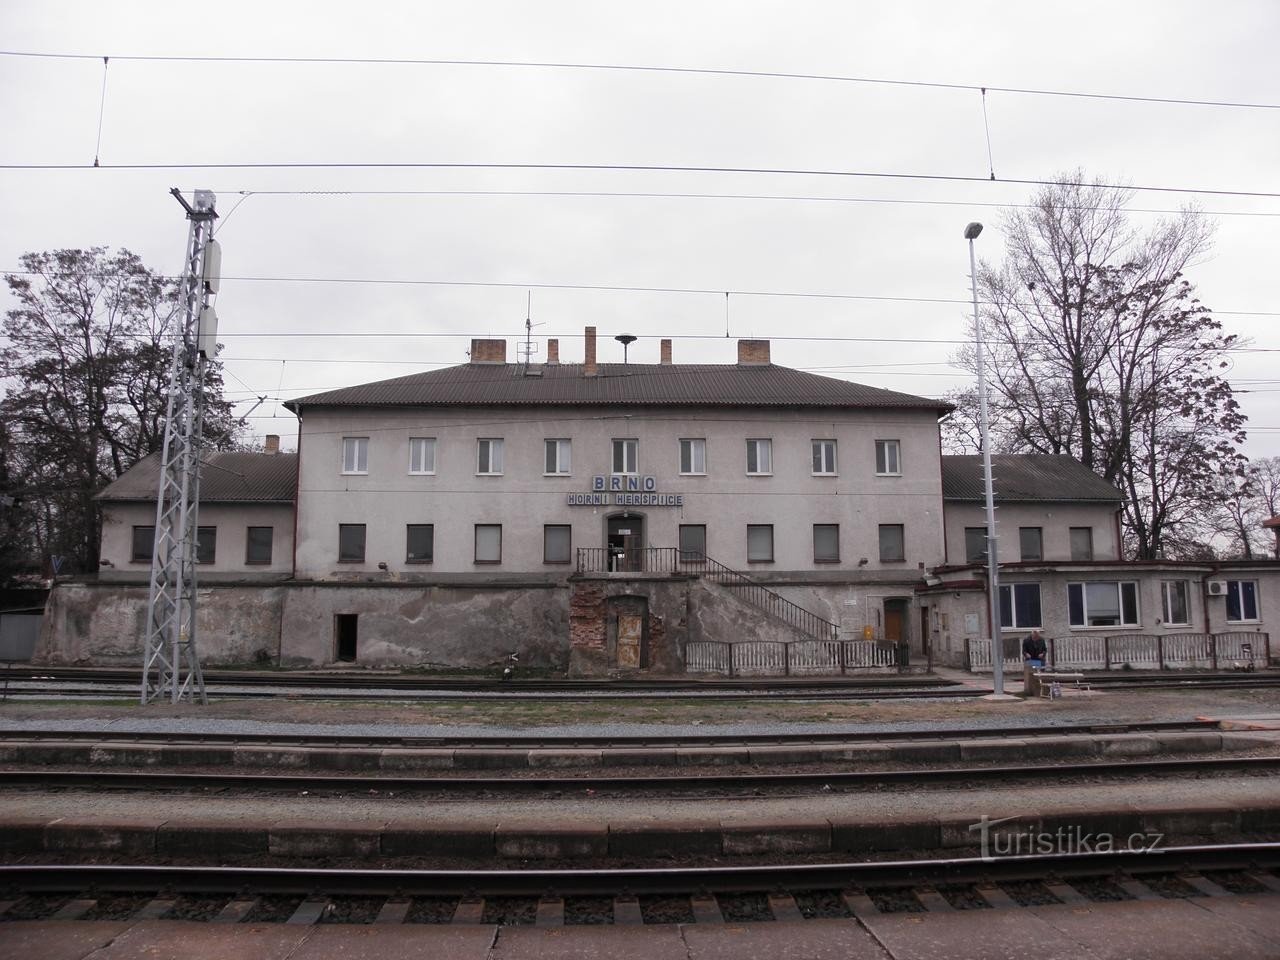 Ferrocarril Brno Horní Heršpice - 31.3.2010